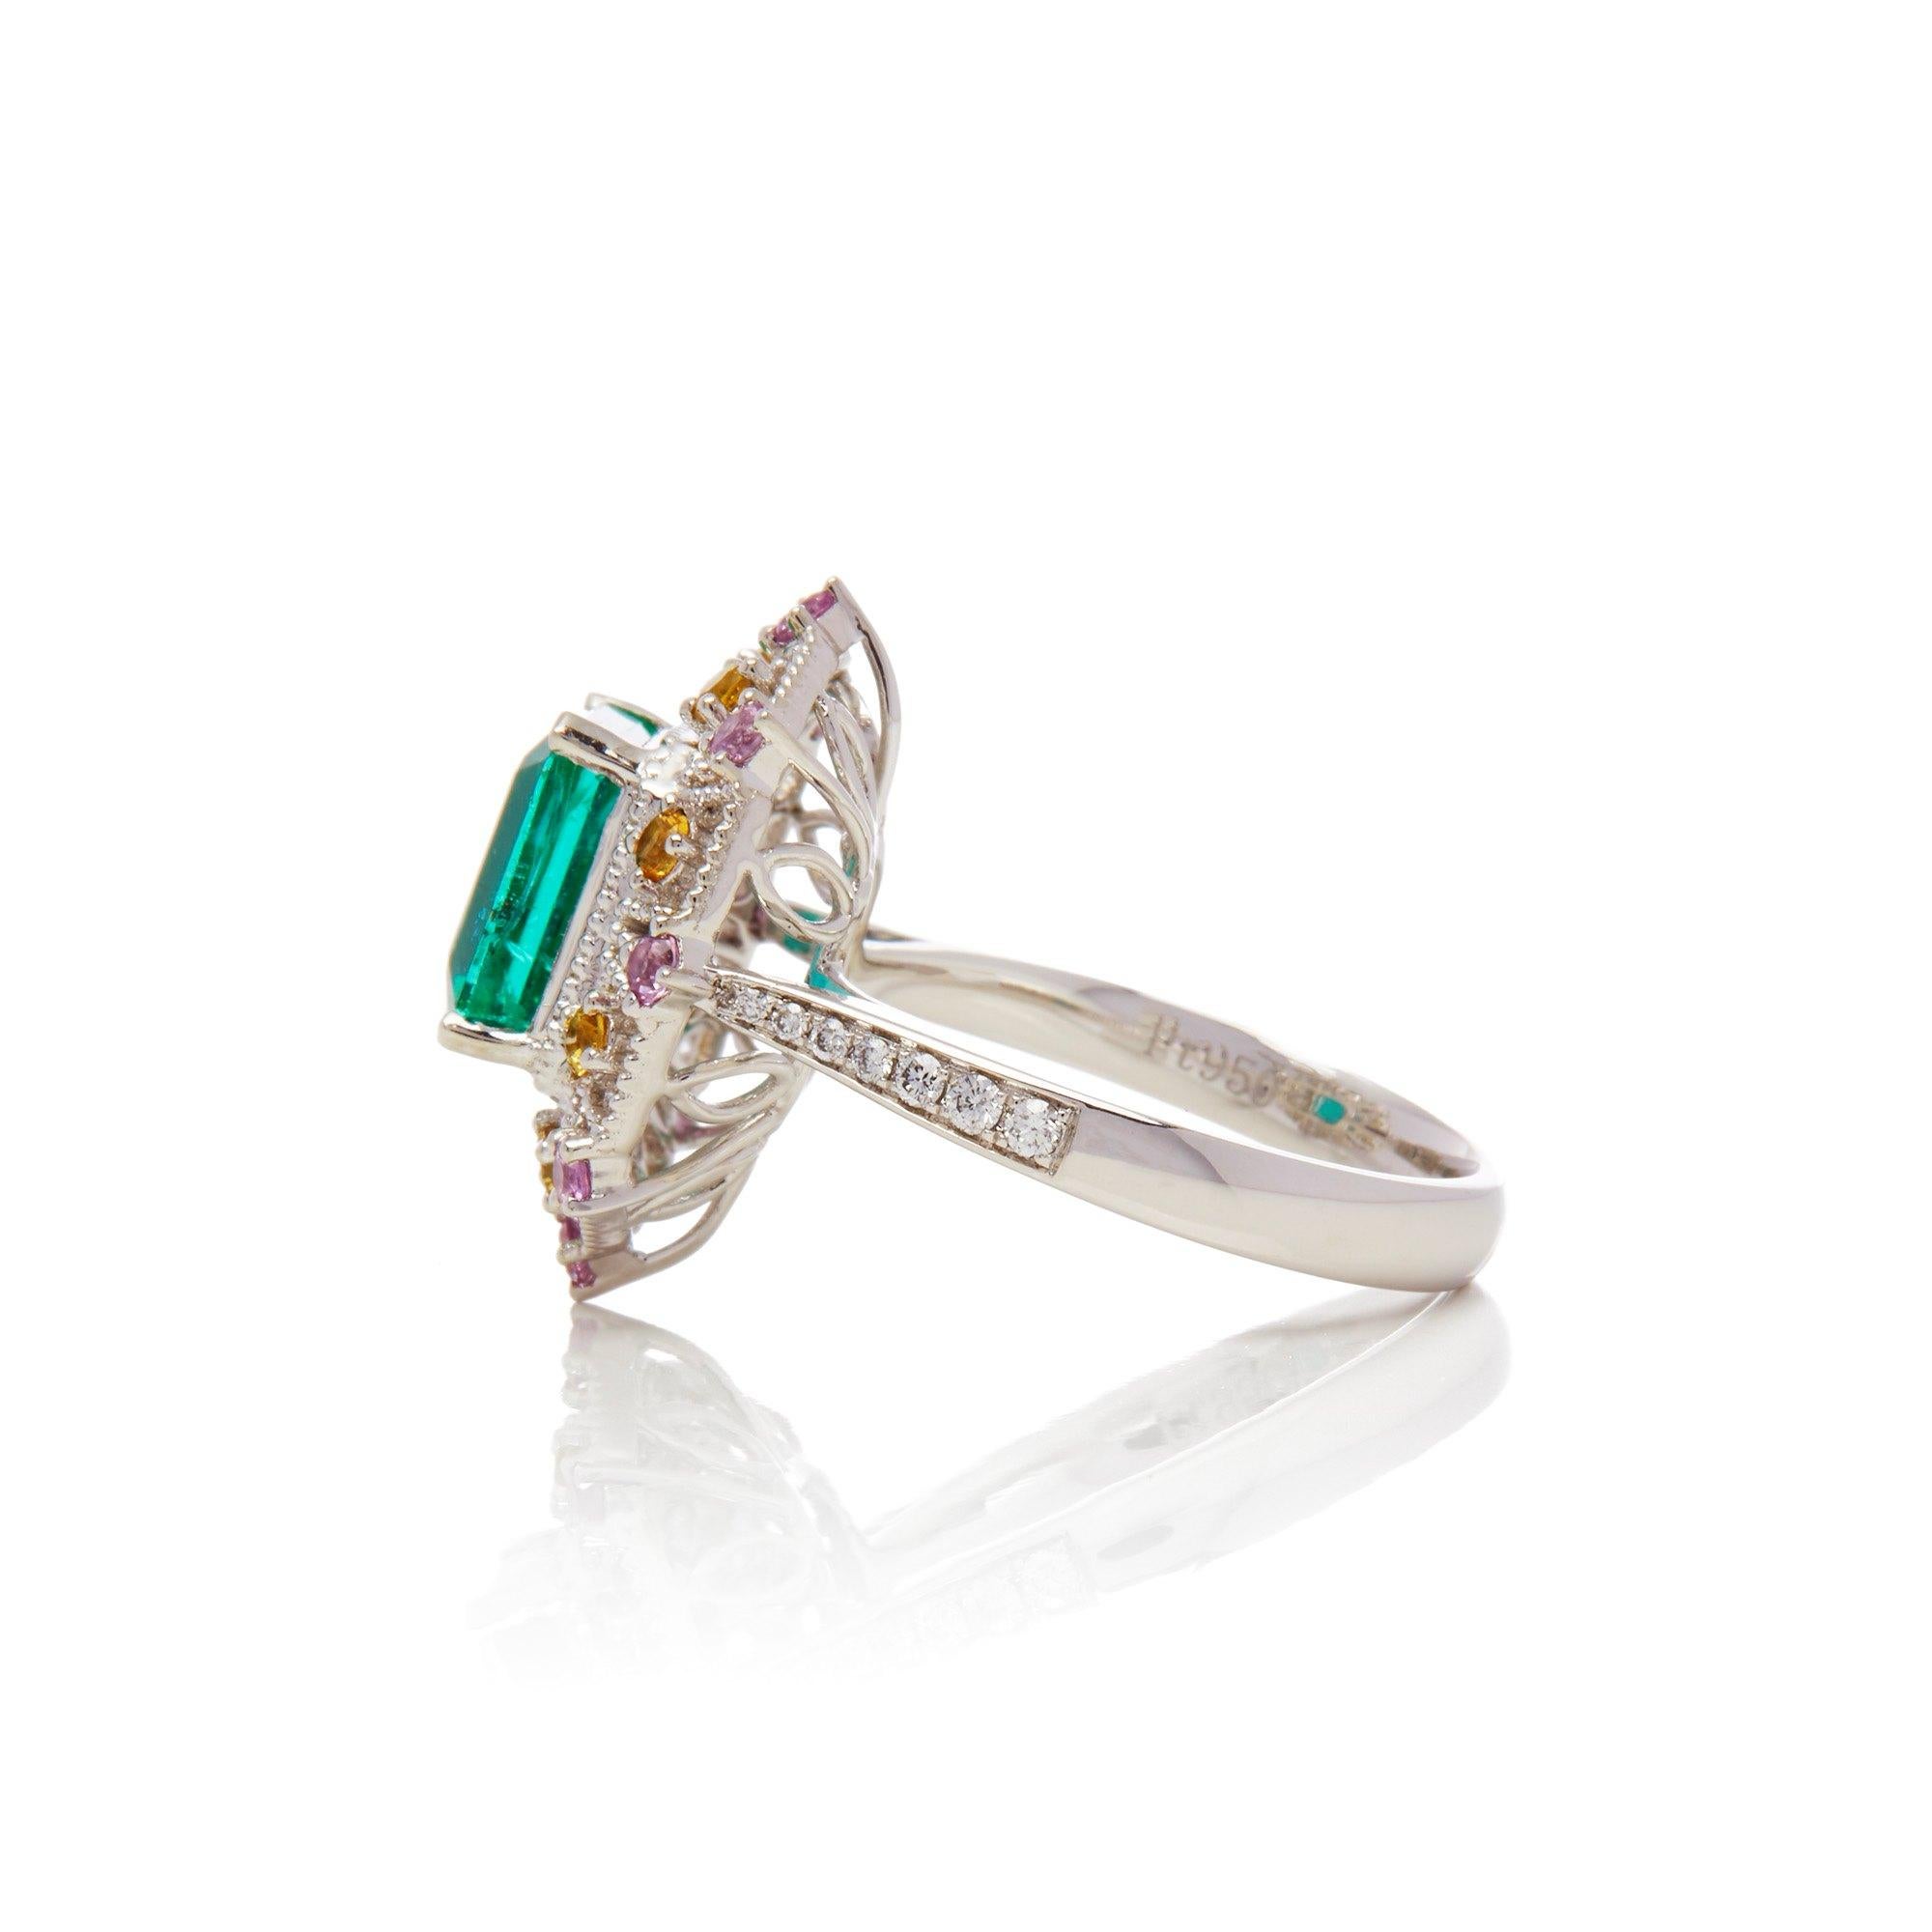 Dieser von David Jerome entworfene Ring stammt aus seiner Privatsammlung und enthält einen Smaragd im Emerald-Schliff, der in der Chivor-Mine in Kolumbien gewonnen wurde und insgesamt 3,03 Karat wiegt. Besetzt mit einer Mischung aus runden Diamanten